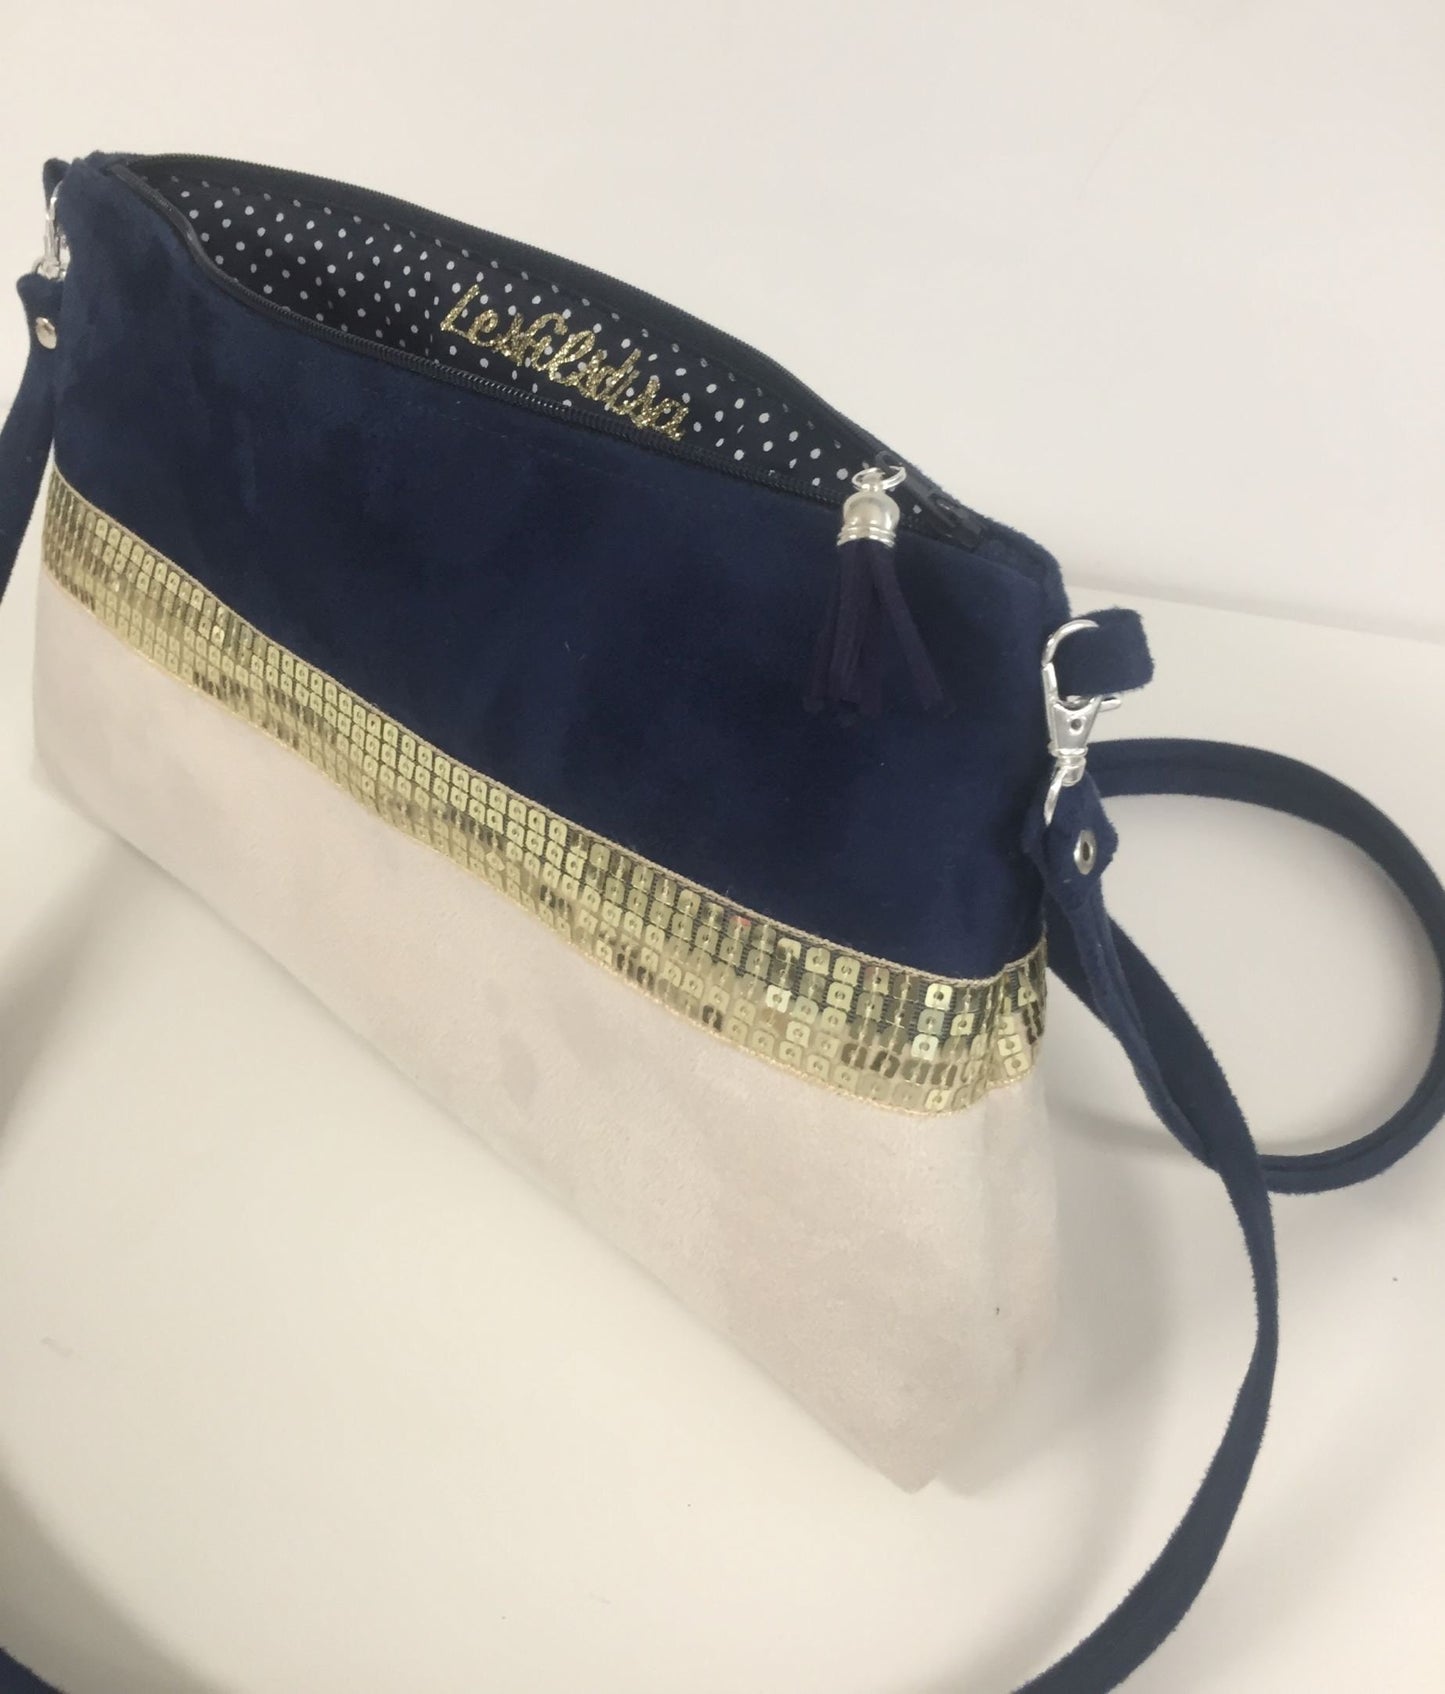 Le sac bandoulière Isa bleu marine et ivoire à paillettes dorées